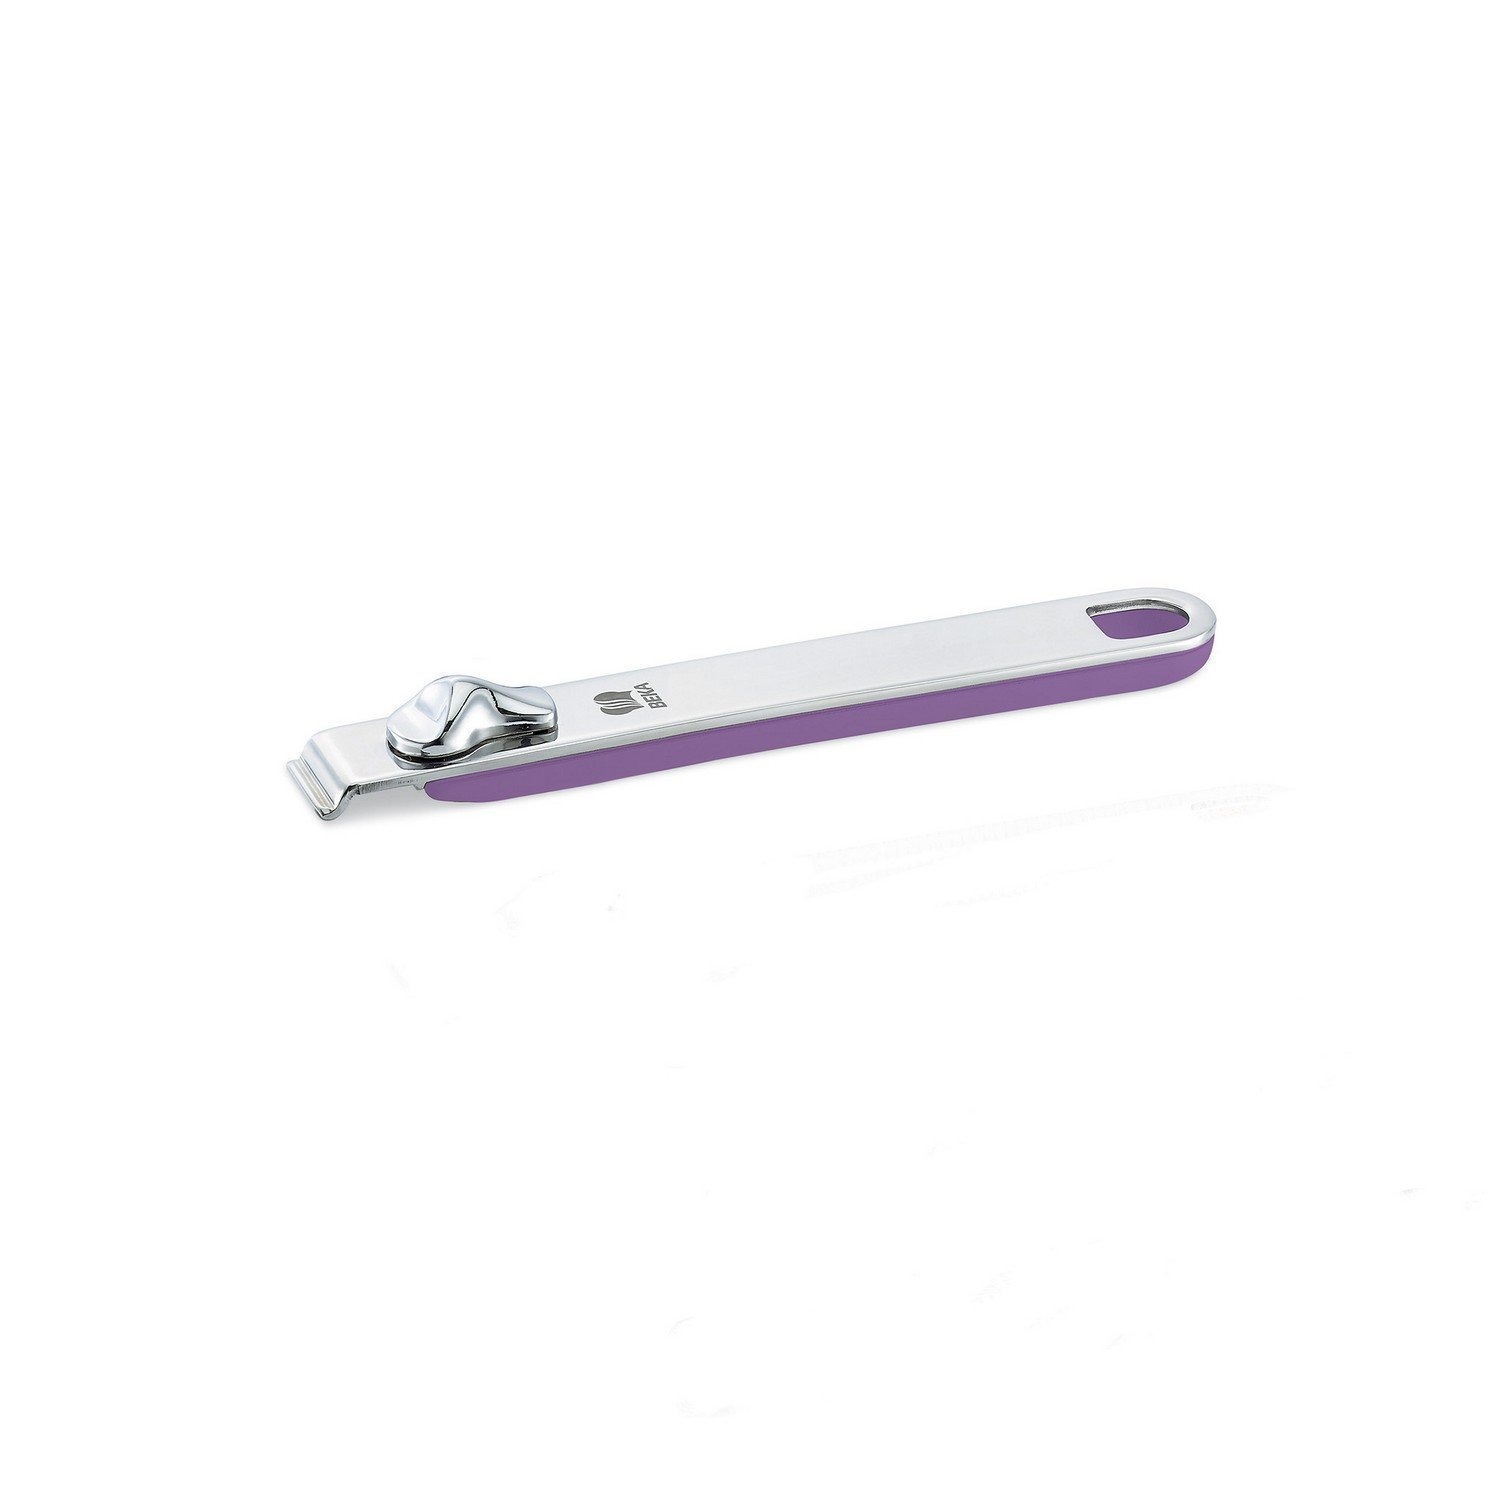 Ручка съемная длинная Beka select фиолетовая 18,5 см ручка съемная длинная select 13608034 beka